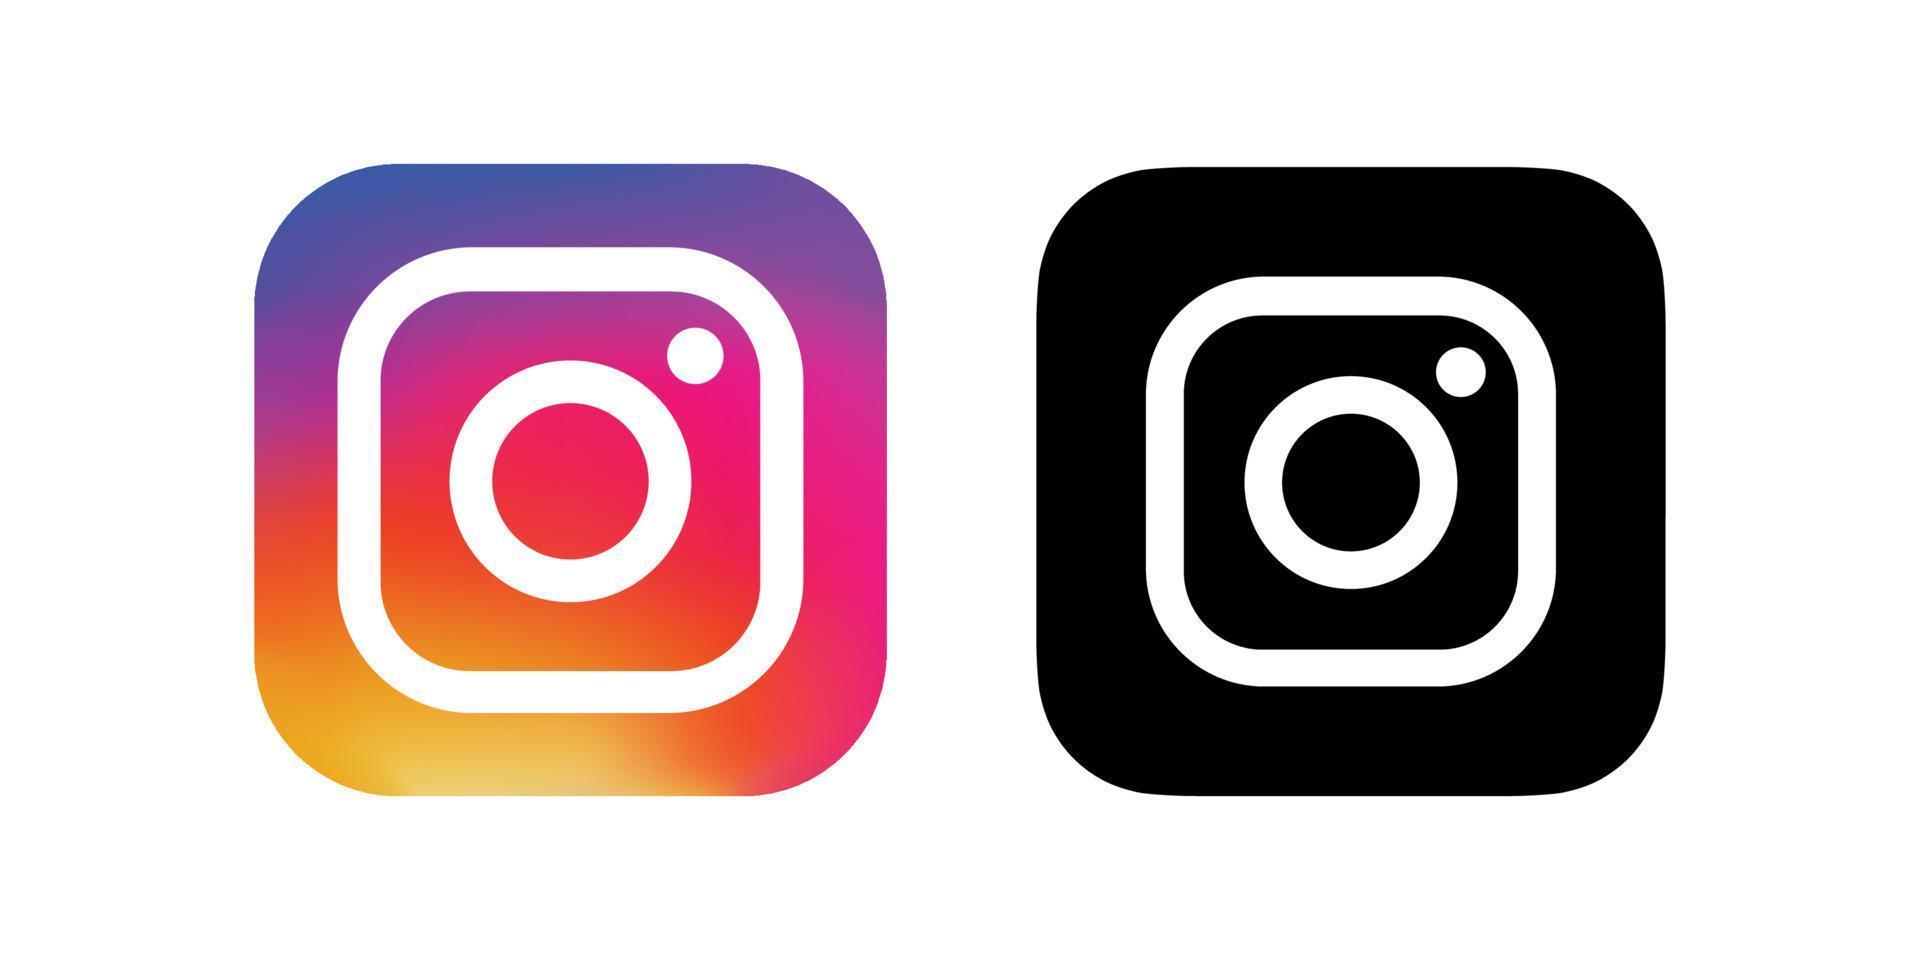 Biểu tượng Instagram di động: Chúng tôi rất tự hào giới thiệu biểu tượng Instagram di động mới nhất của chúng tôi. Nói lời tạm biệt với biểu tượng tròn truyền thống, đón nhận biểu tượng mới được thiết kế tinh tế và độc đáo hơn bao giờ hết. Cùng nhau chia sẻ và khoe sự đổi mới đầy tươi trẻ này trên Instagram của bạn.